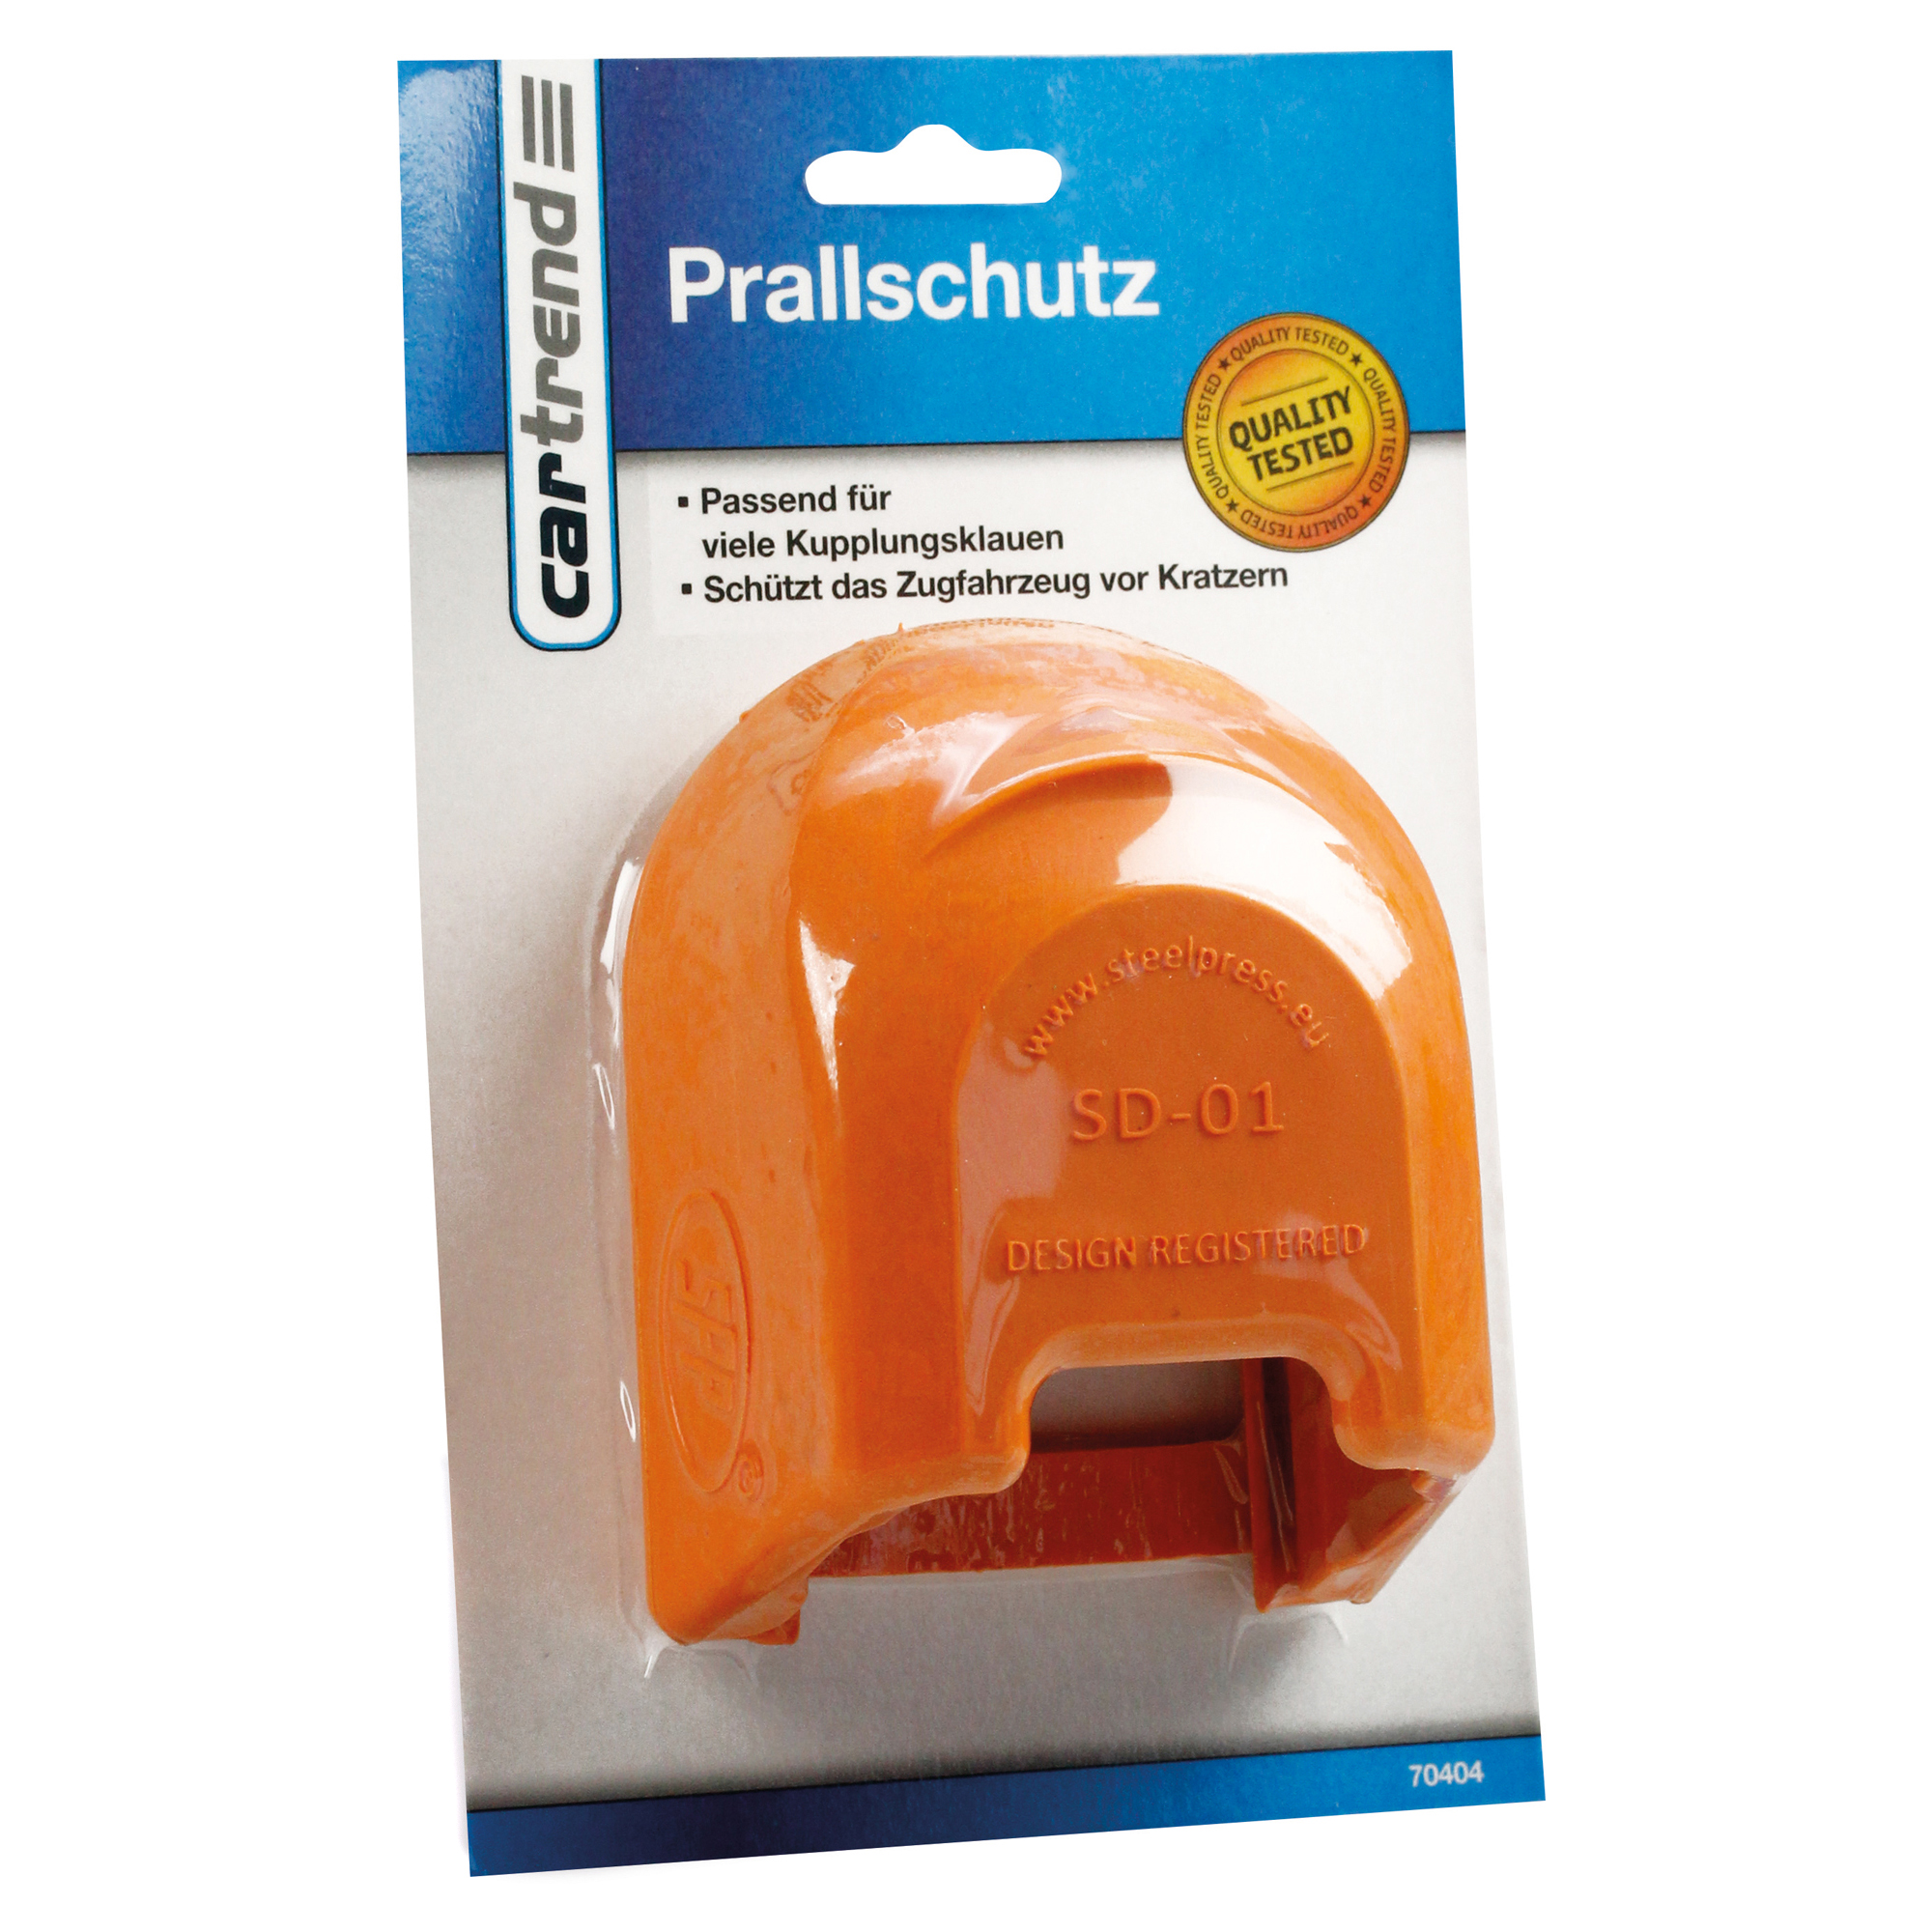 Prallschutz orange + product picture